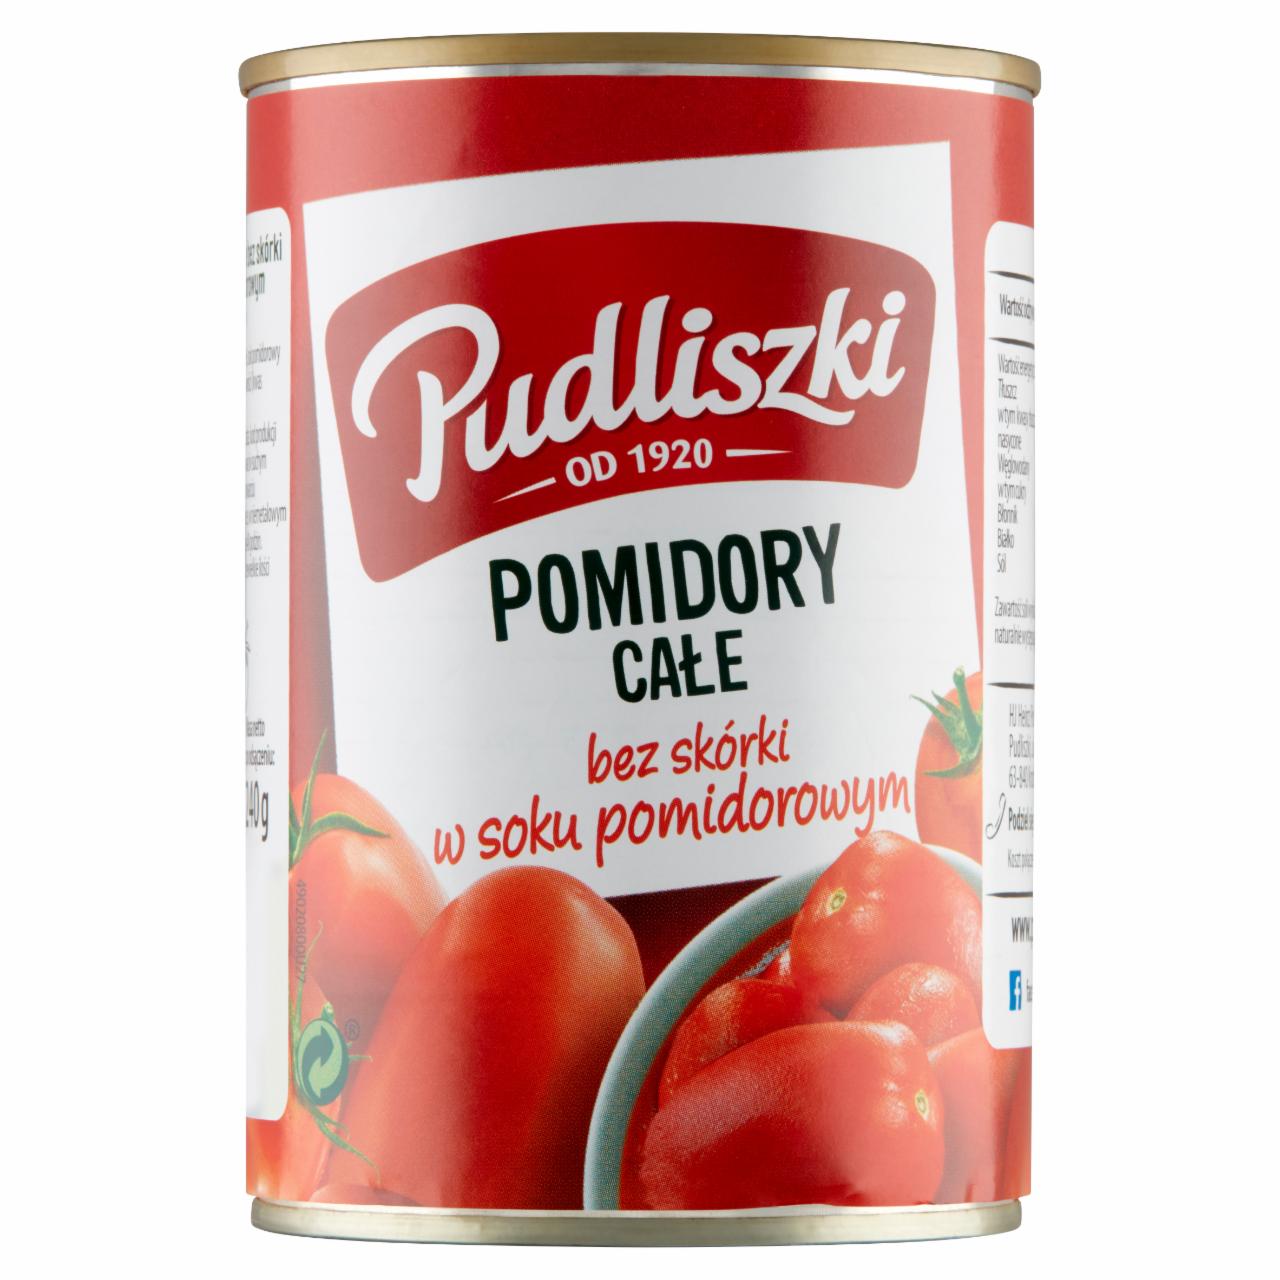 Zdjęcia - Pudliszki Pomidory całe bez skórki w soku pomidorowym 400 g